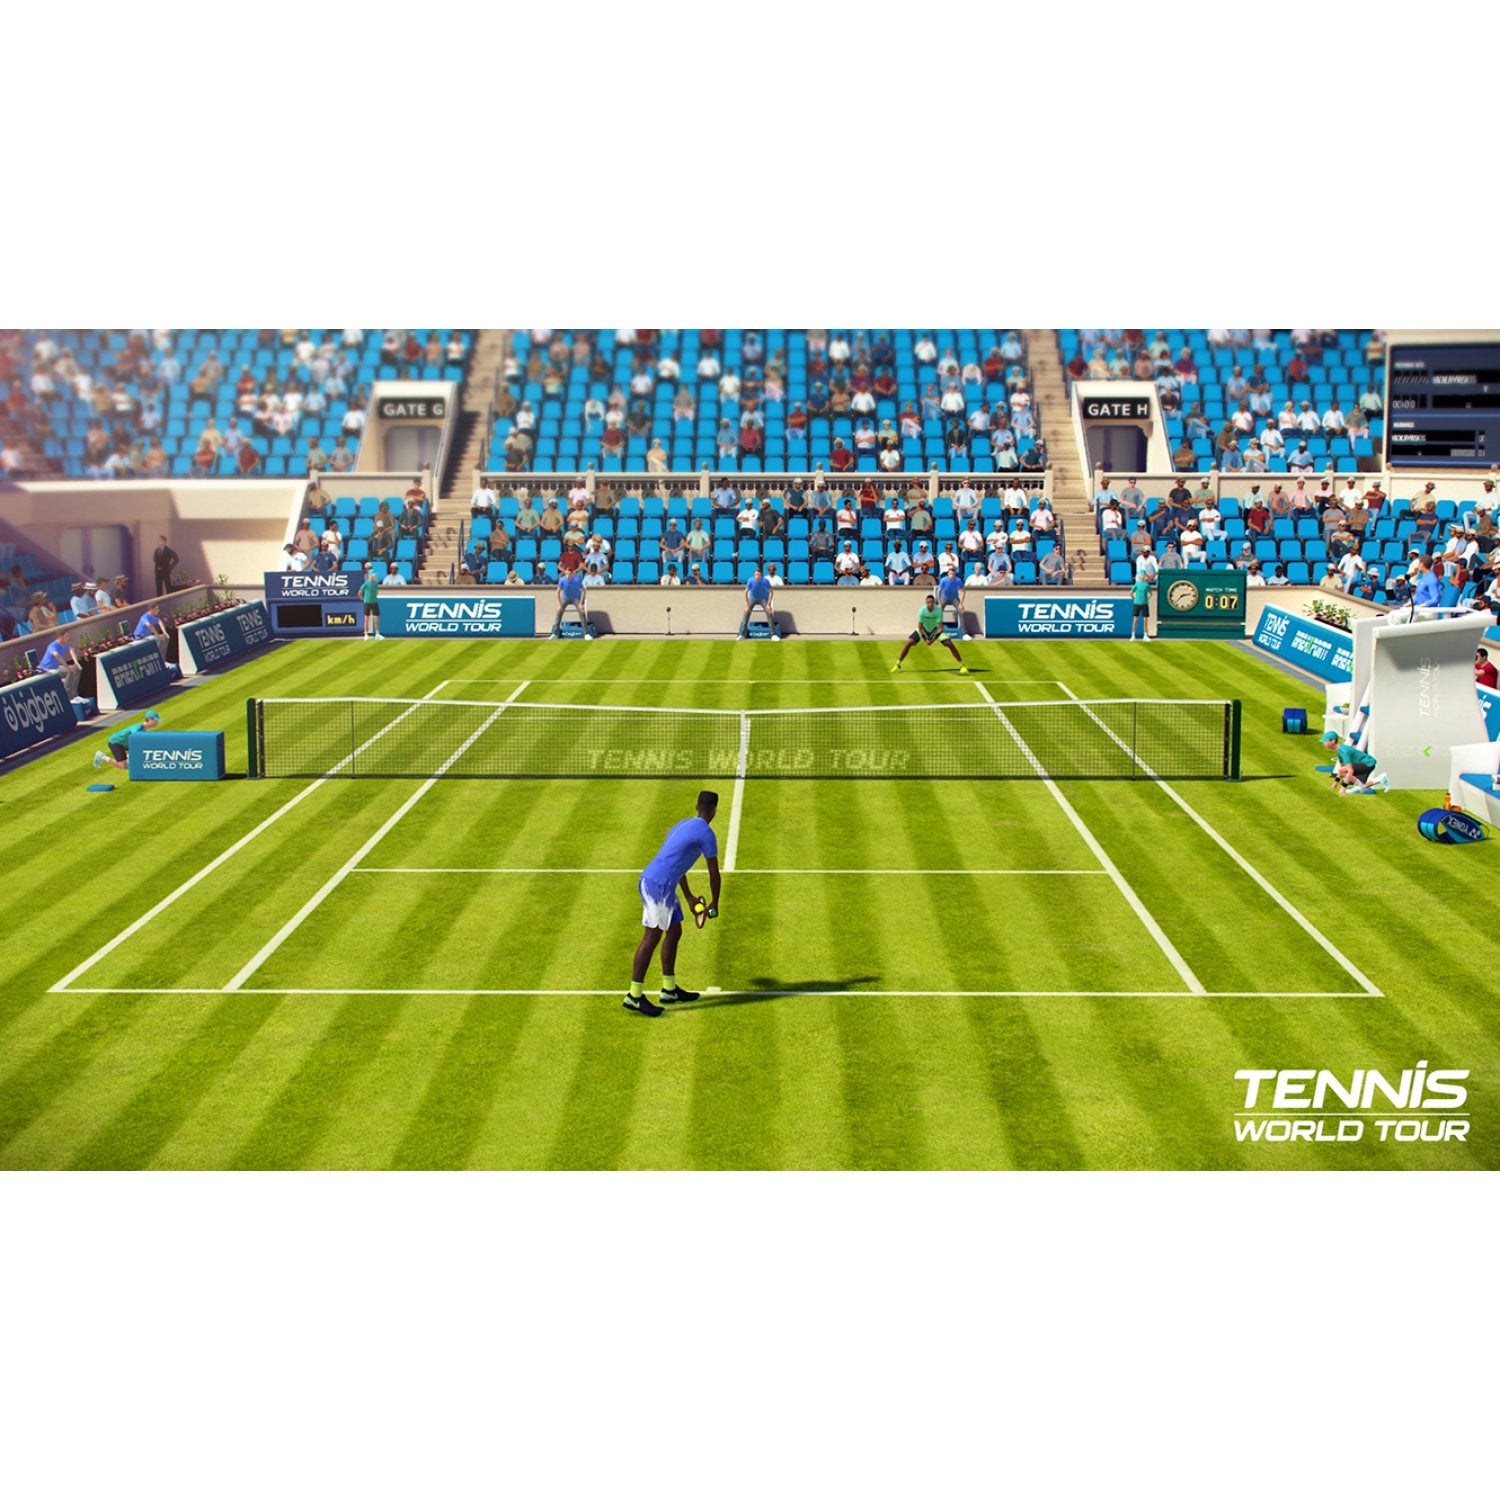 NSW Tennis World Tour [Roland-Garros Edition]